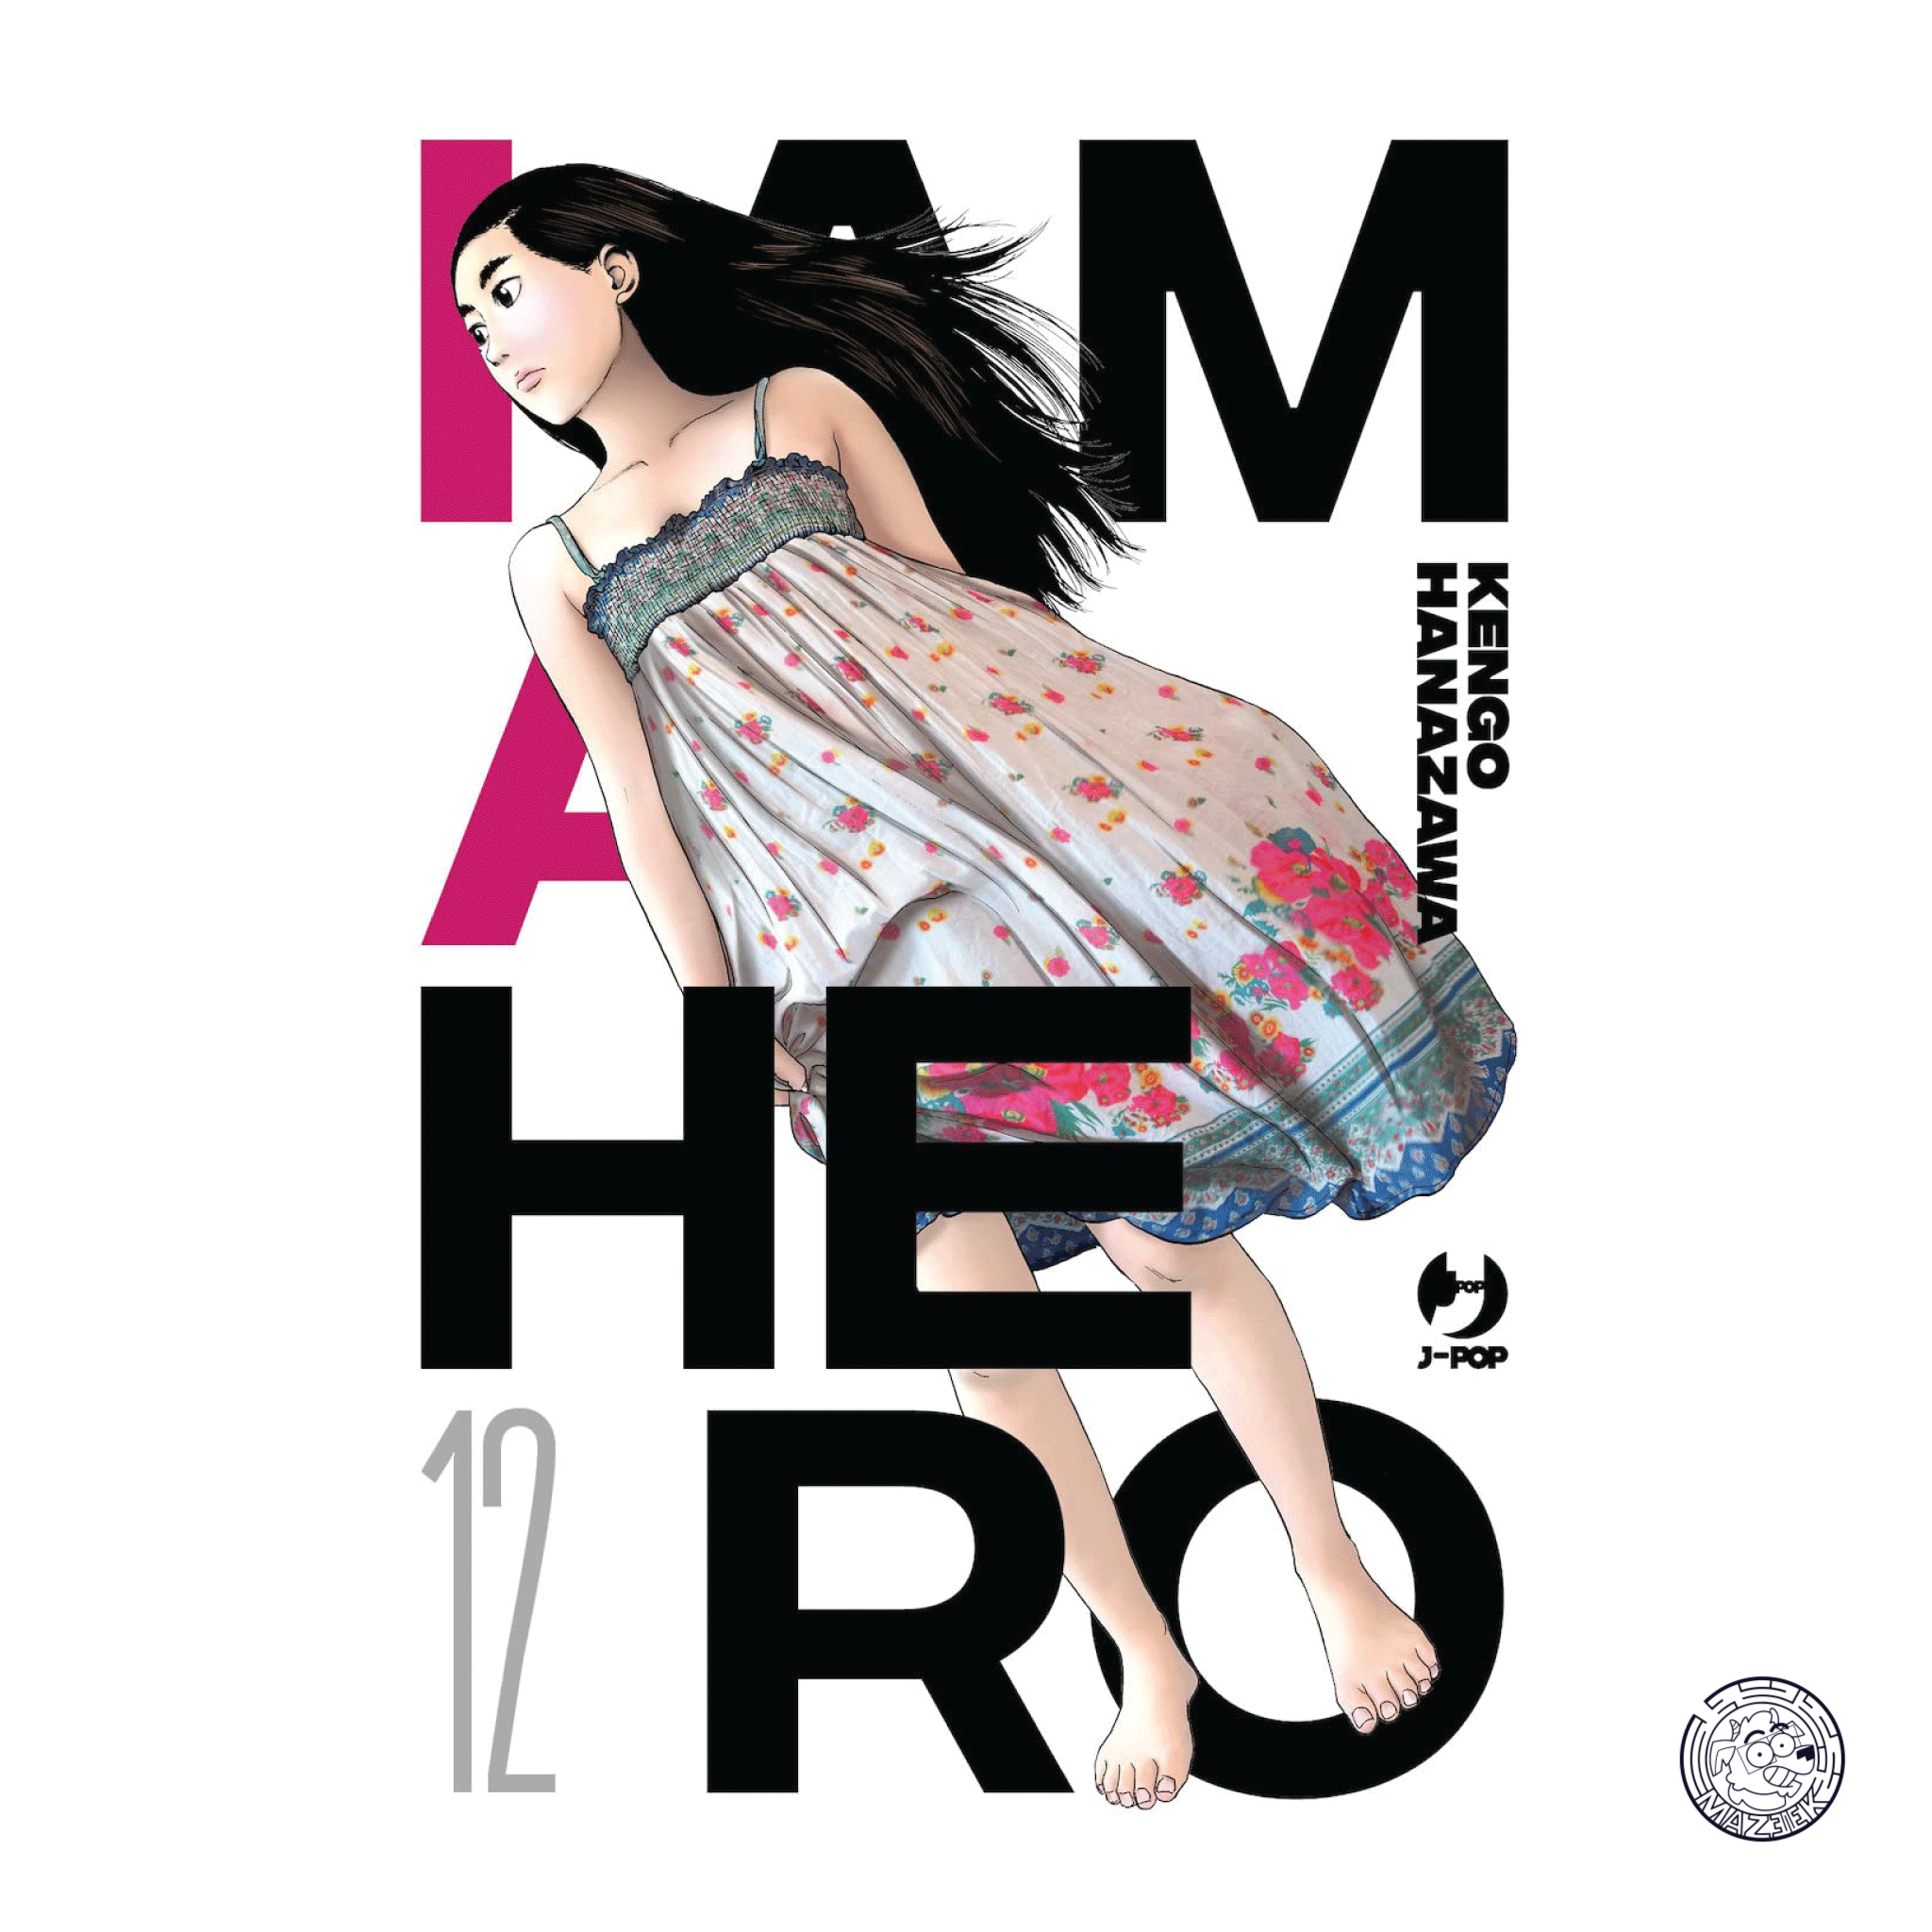 I am a Hero - Nuova Edizione 12